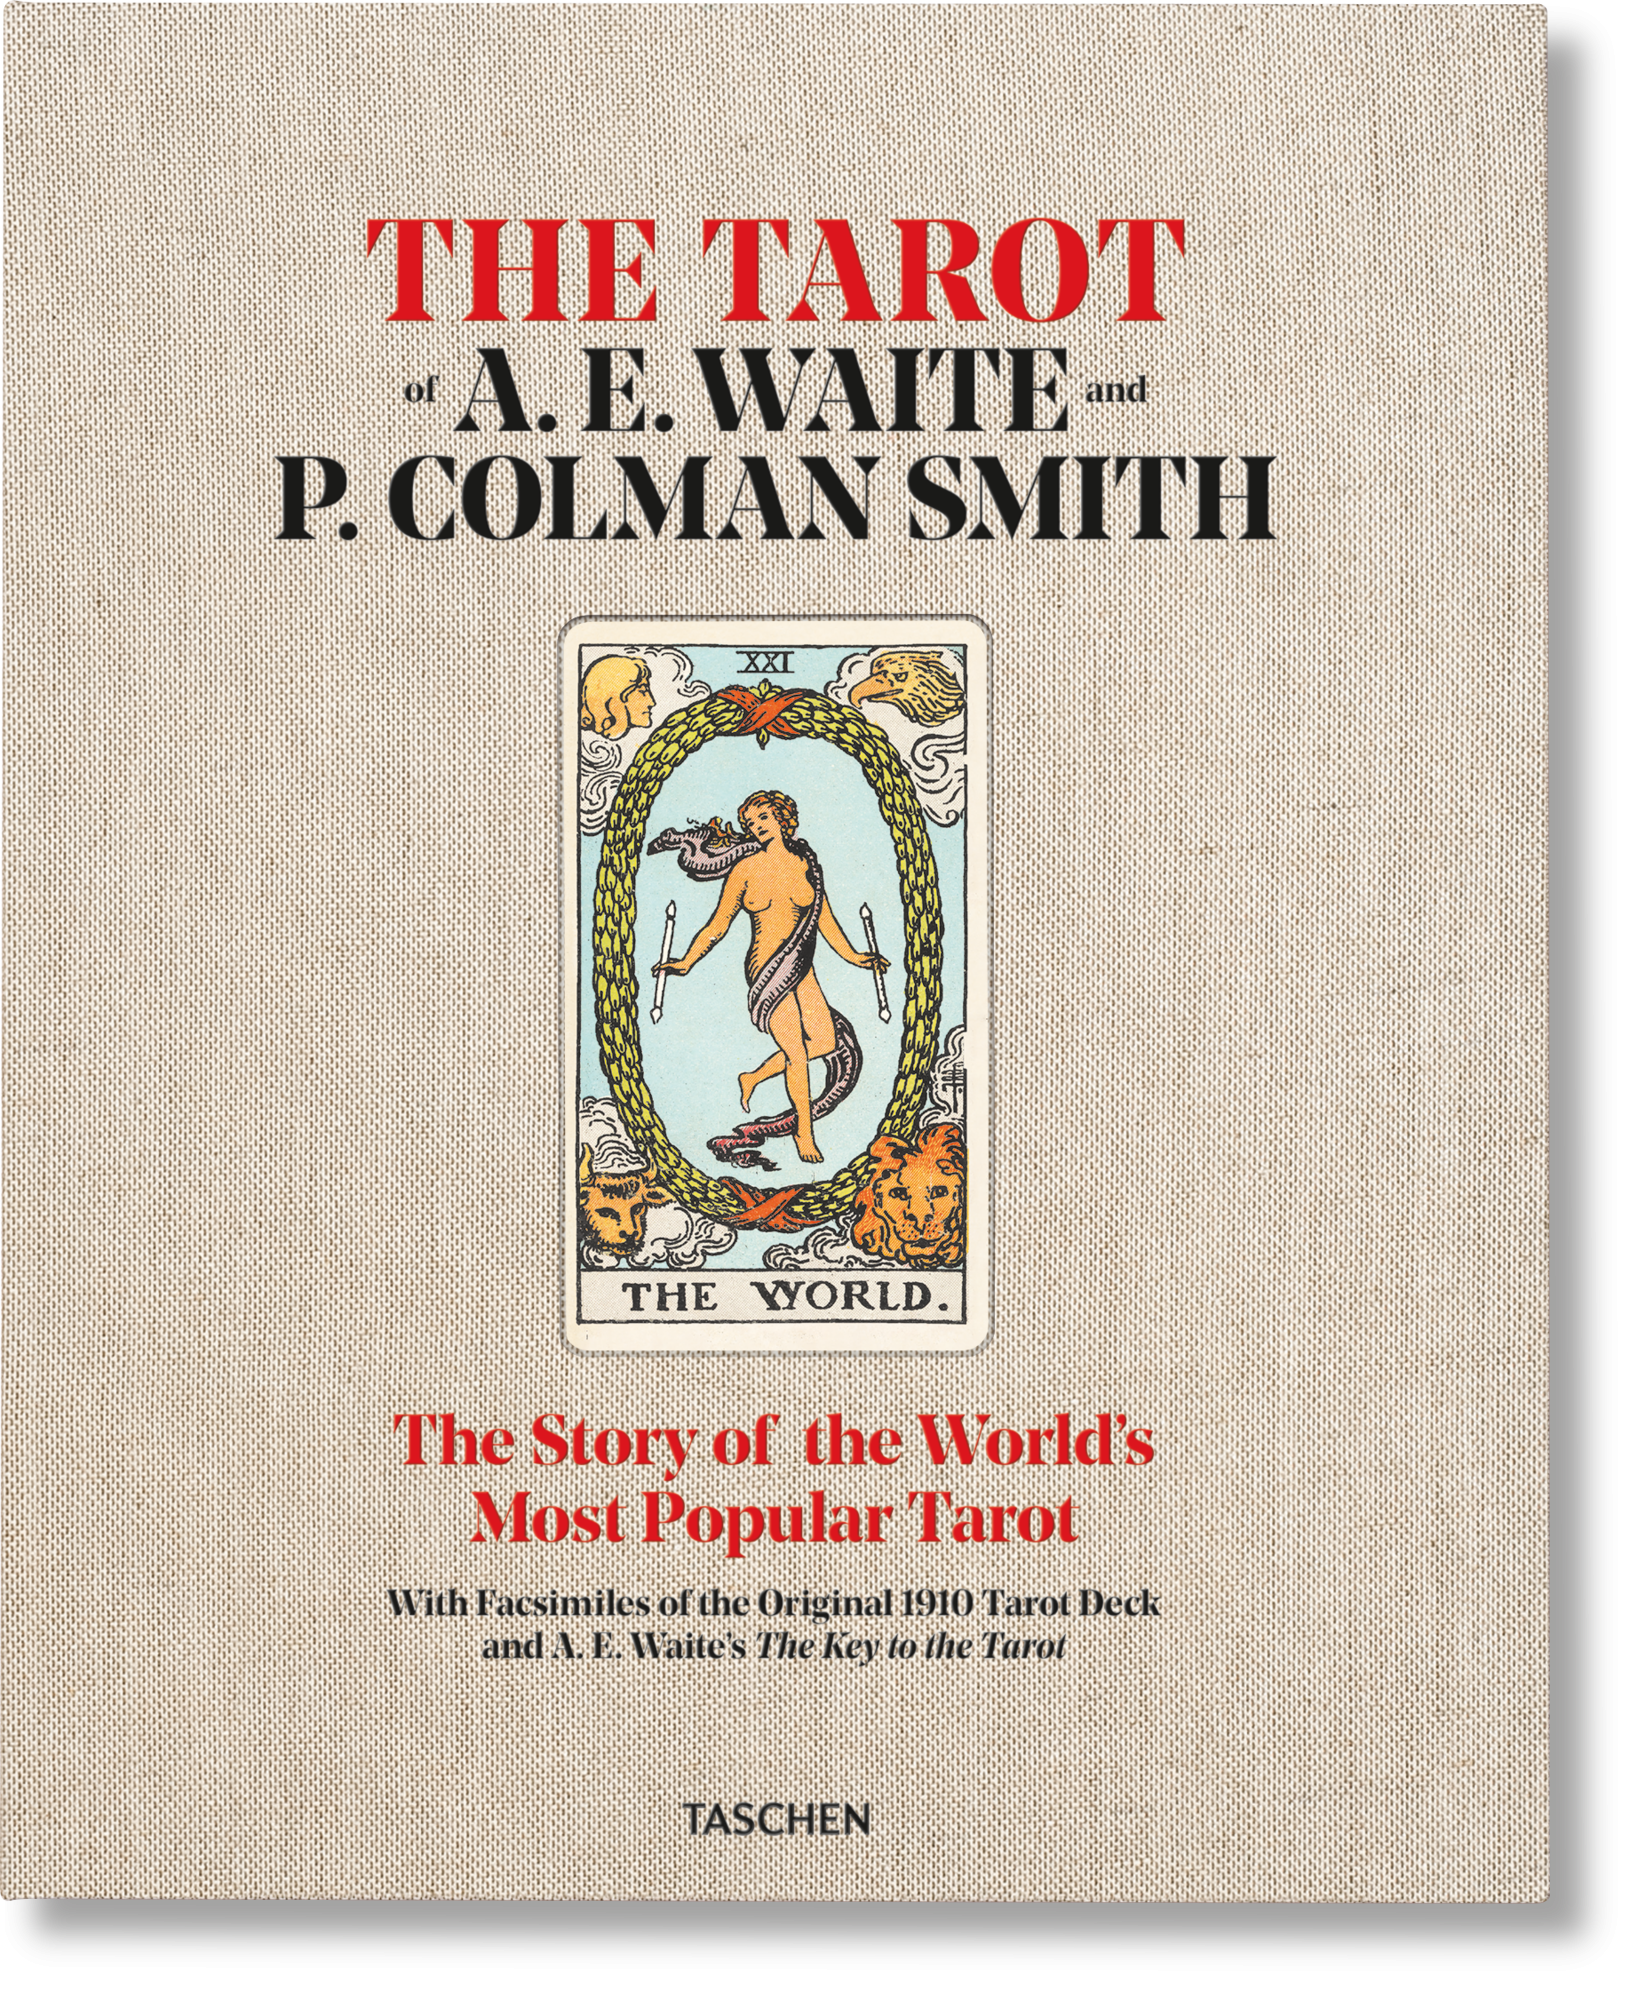 TASCHEN Books: The Tarot of P. Colman Smith and A. E. Waite